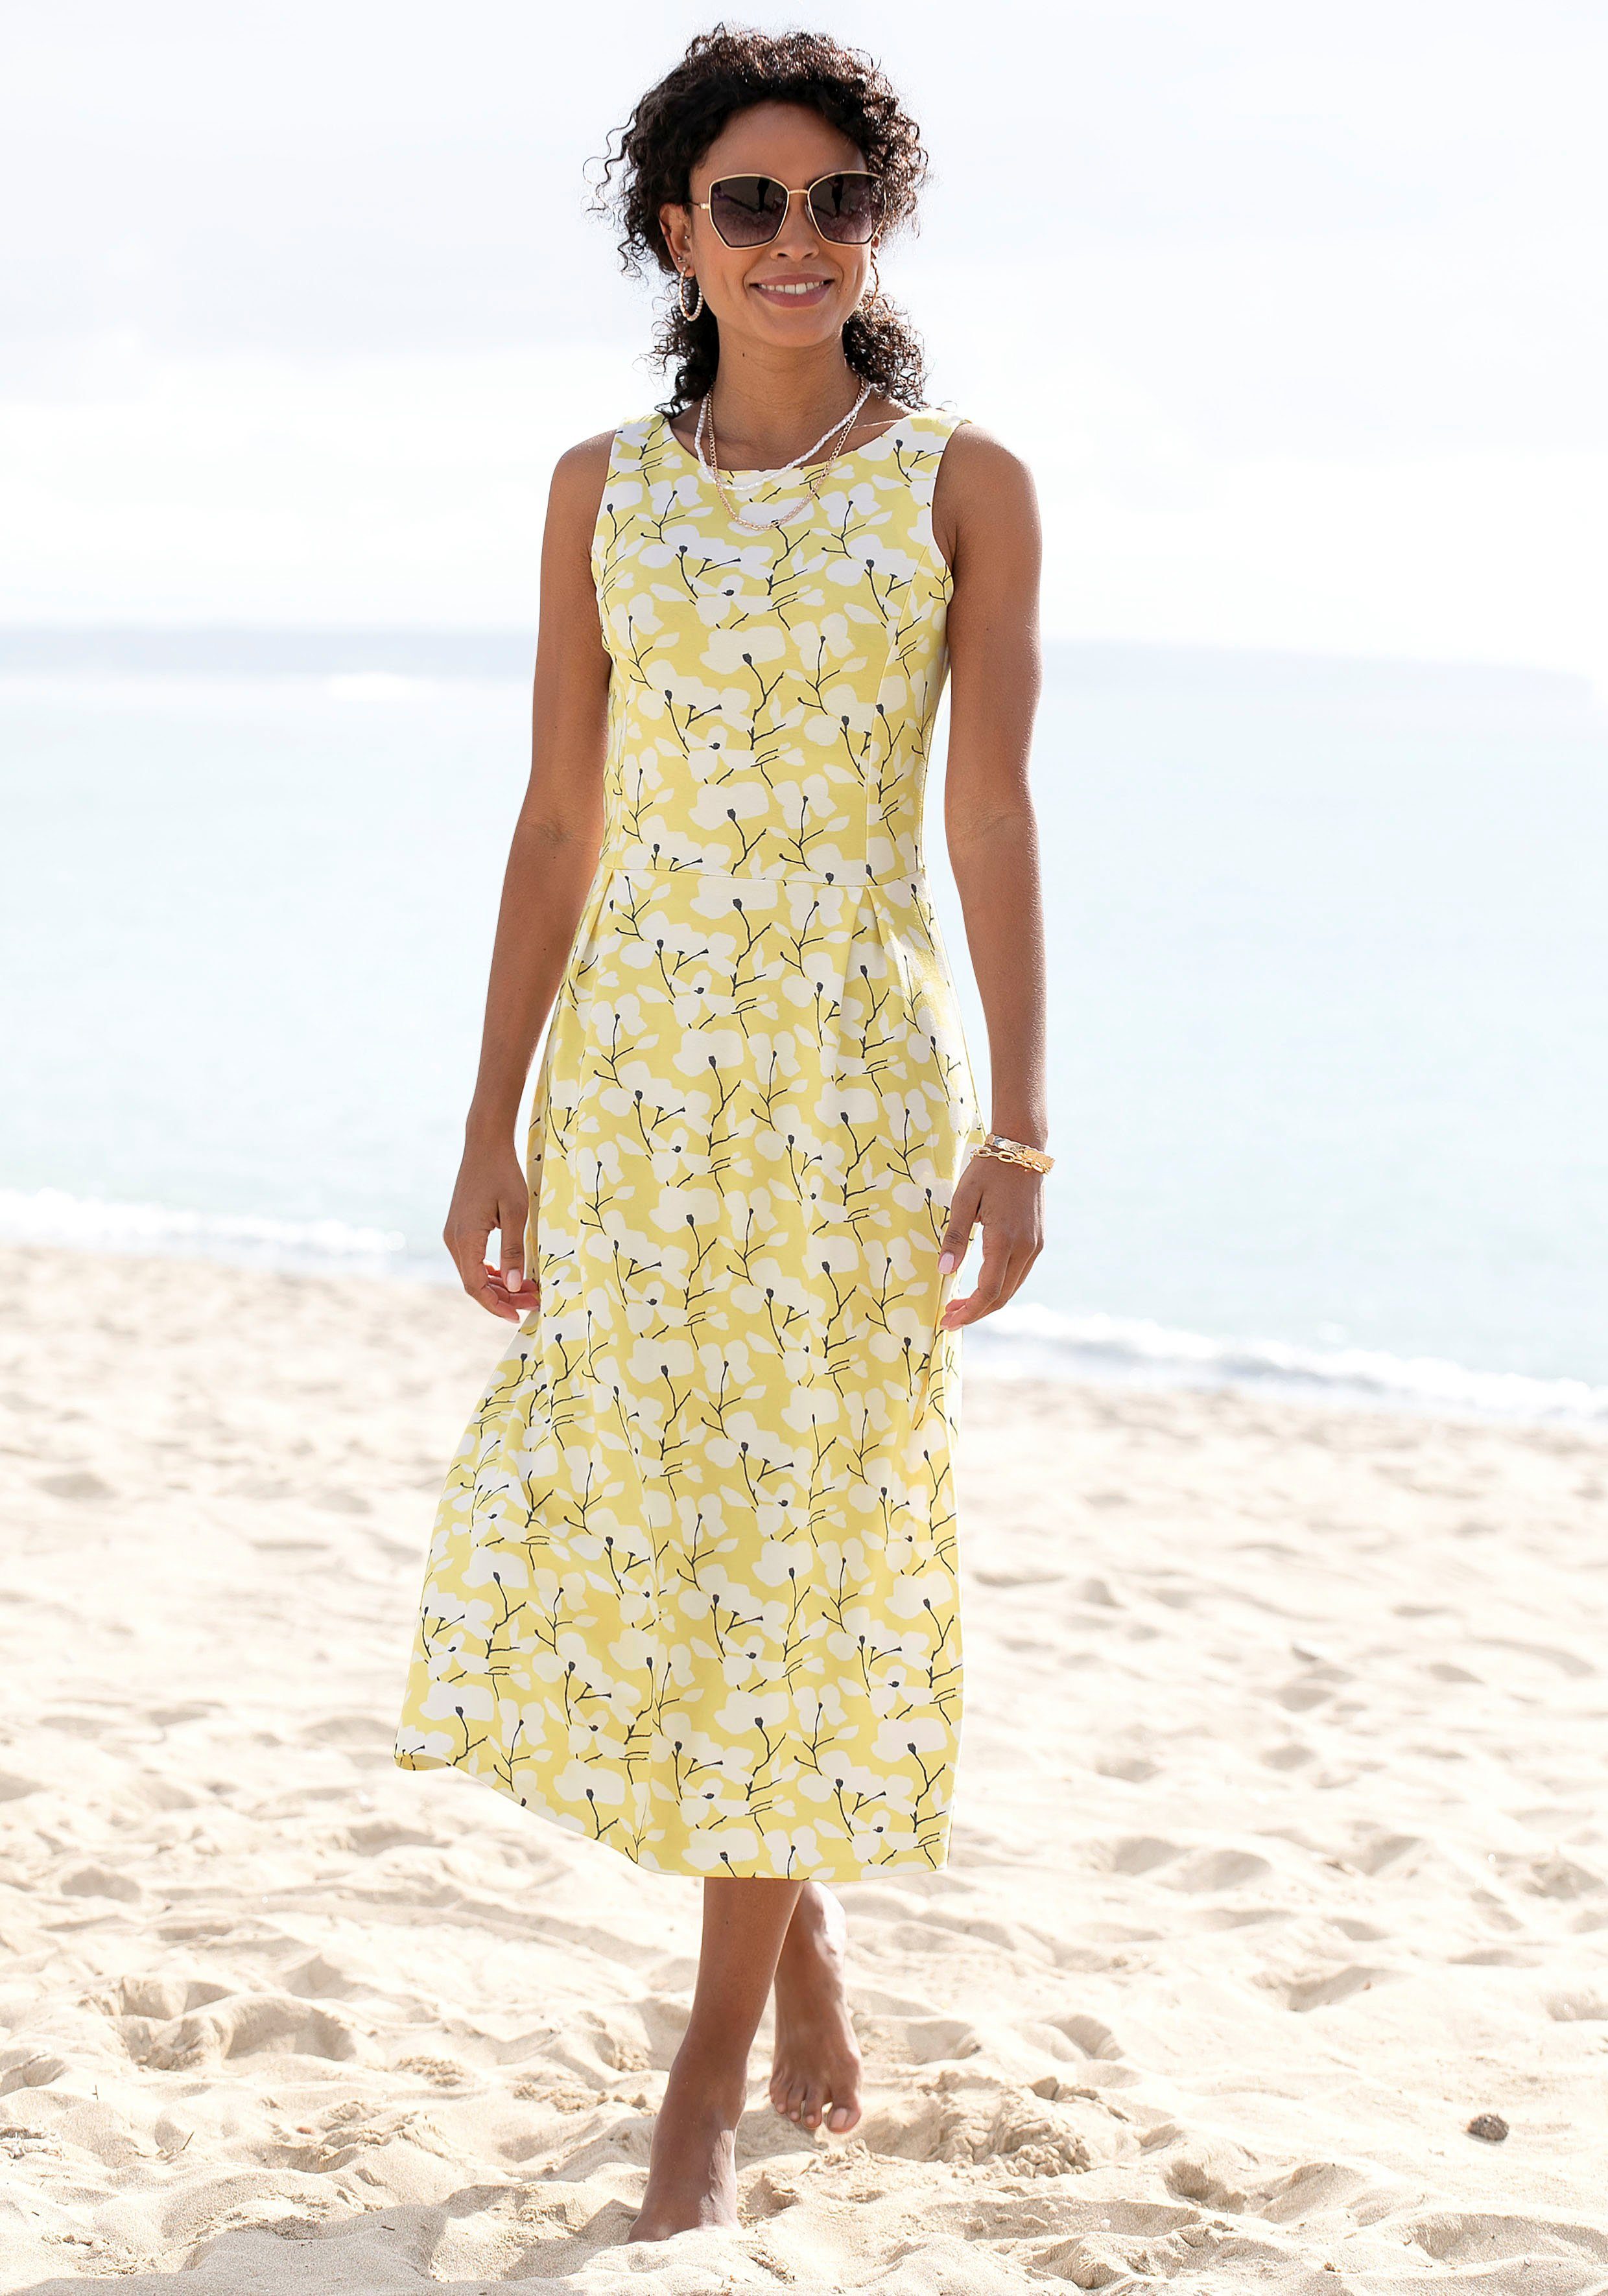 Beachtime Sommerkleid Blumendruck, Strandmode, gelb-creme-bedruckt Strandbekleidung mit